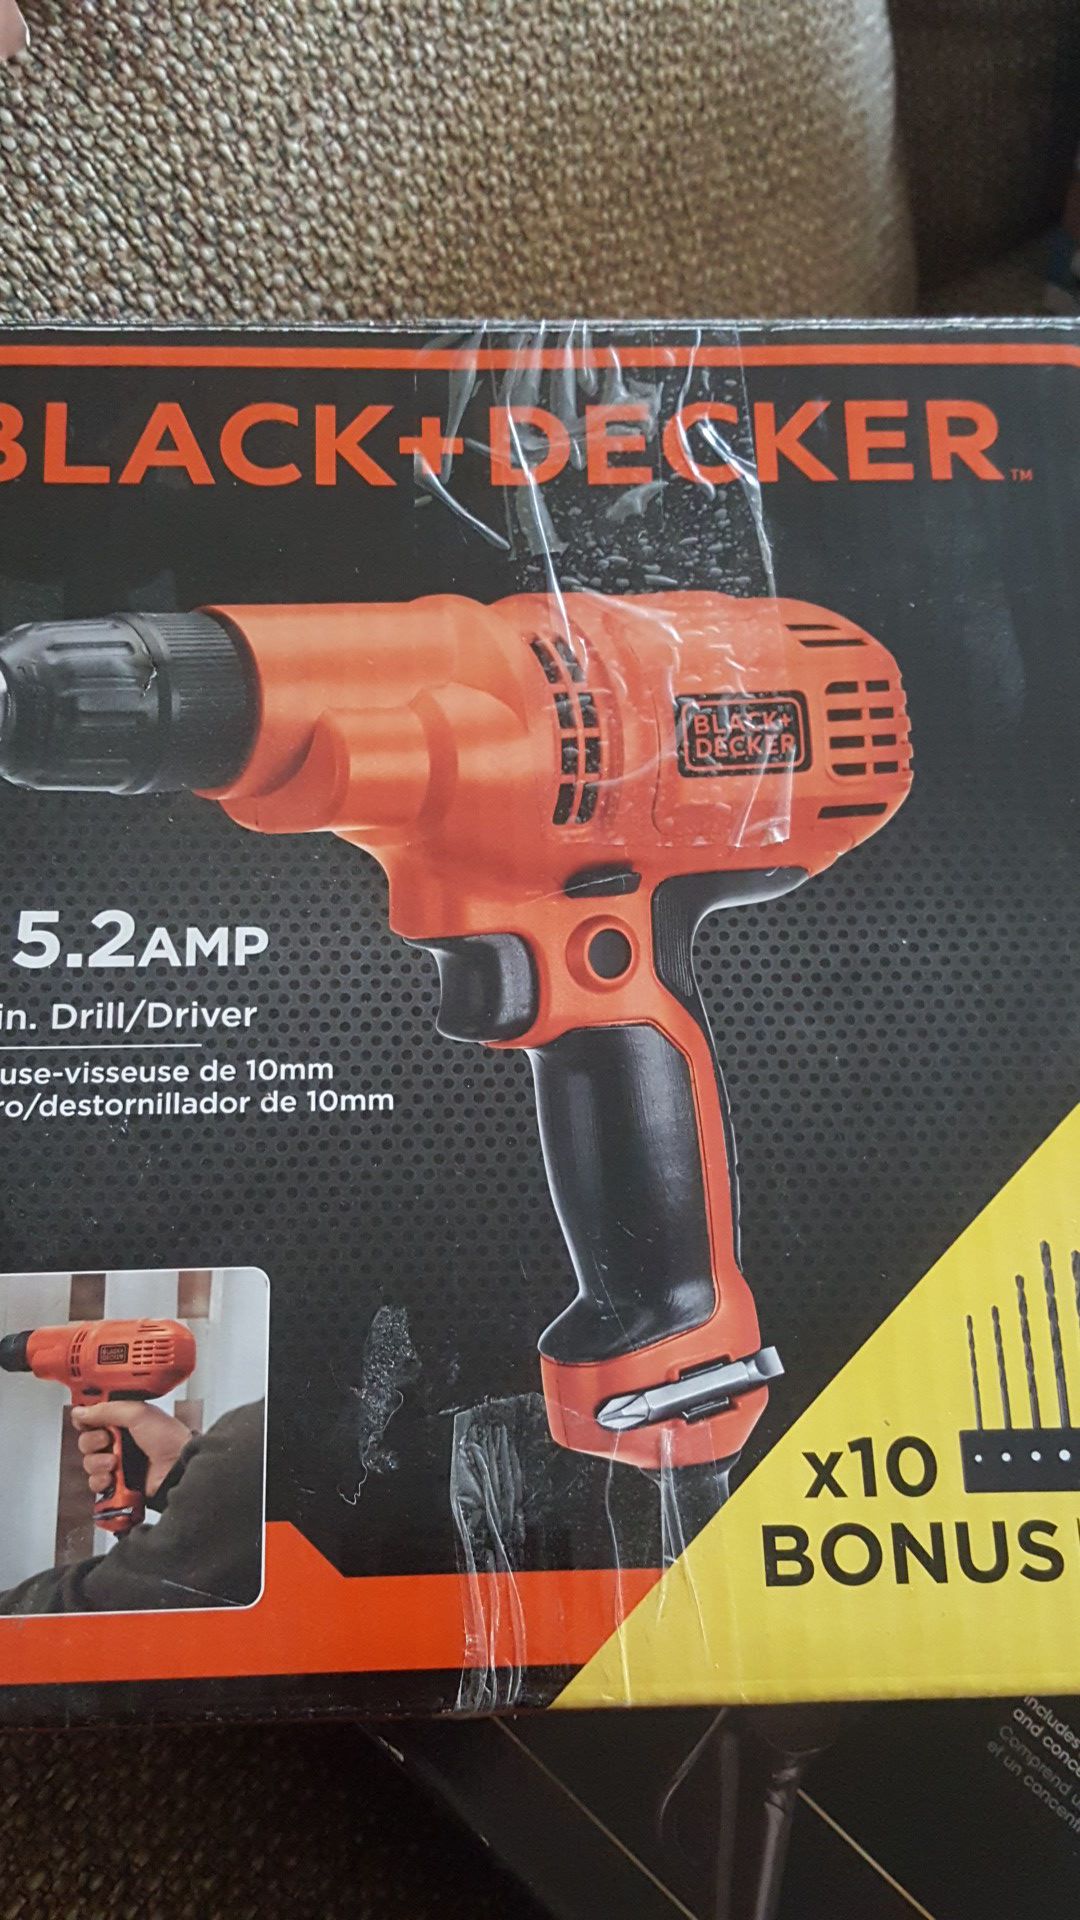 Black & Decker 5.2 amps 3/8 in drill driver